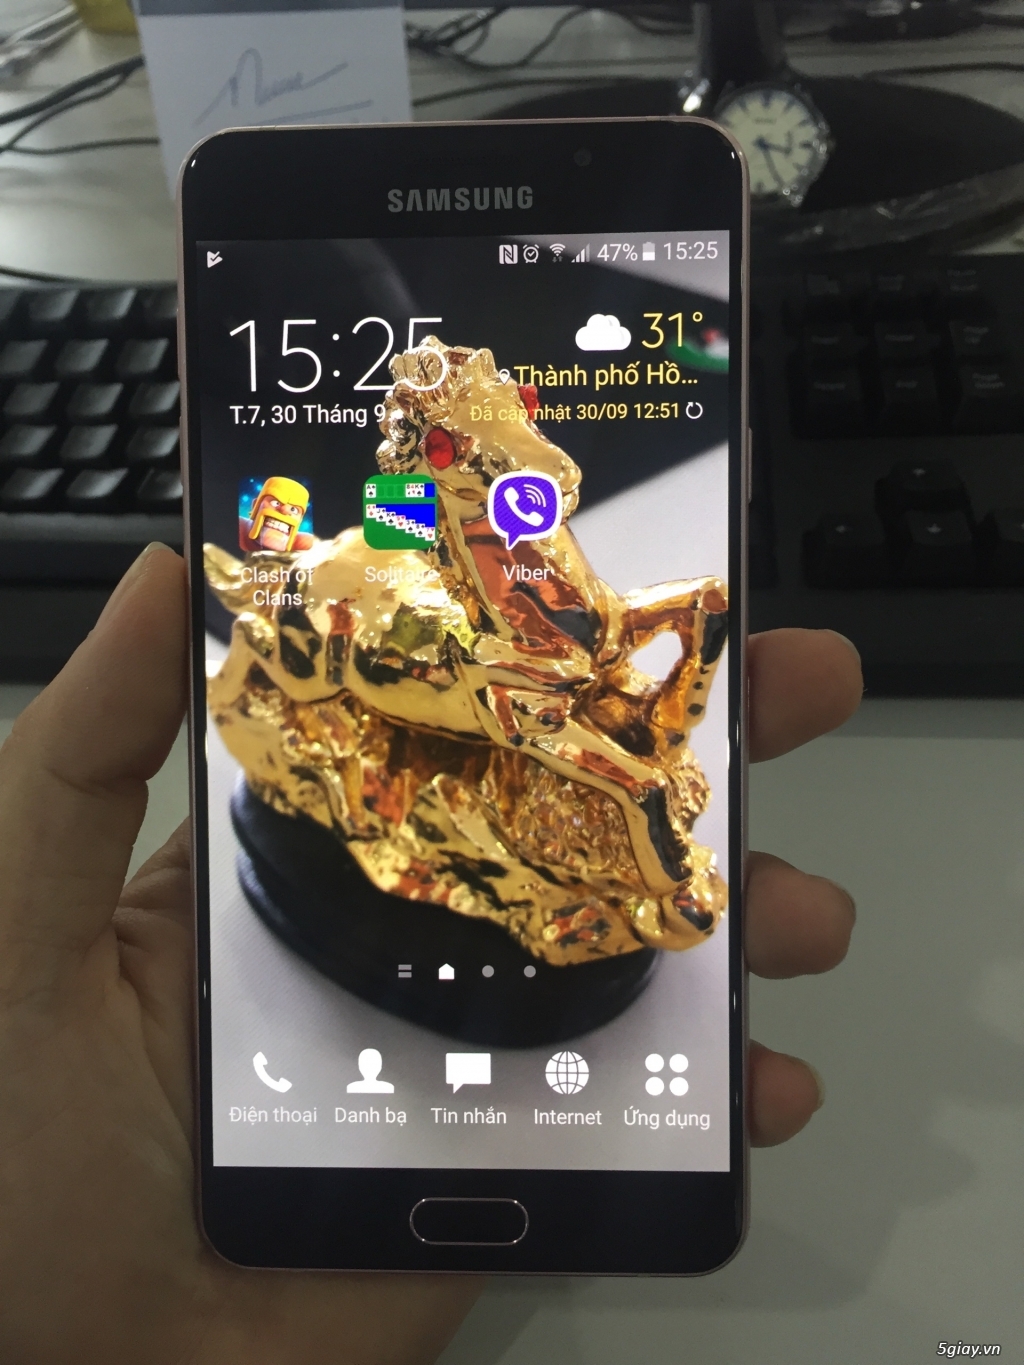 Samsung A7 2016 Rose Gold. 3 tr 8 ra đi nhanh chóng - 1